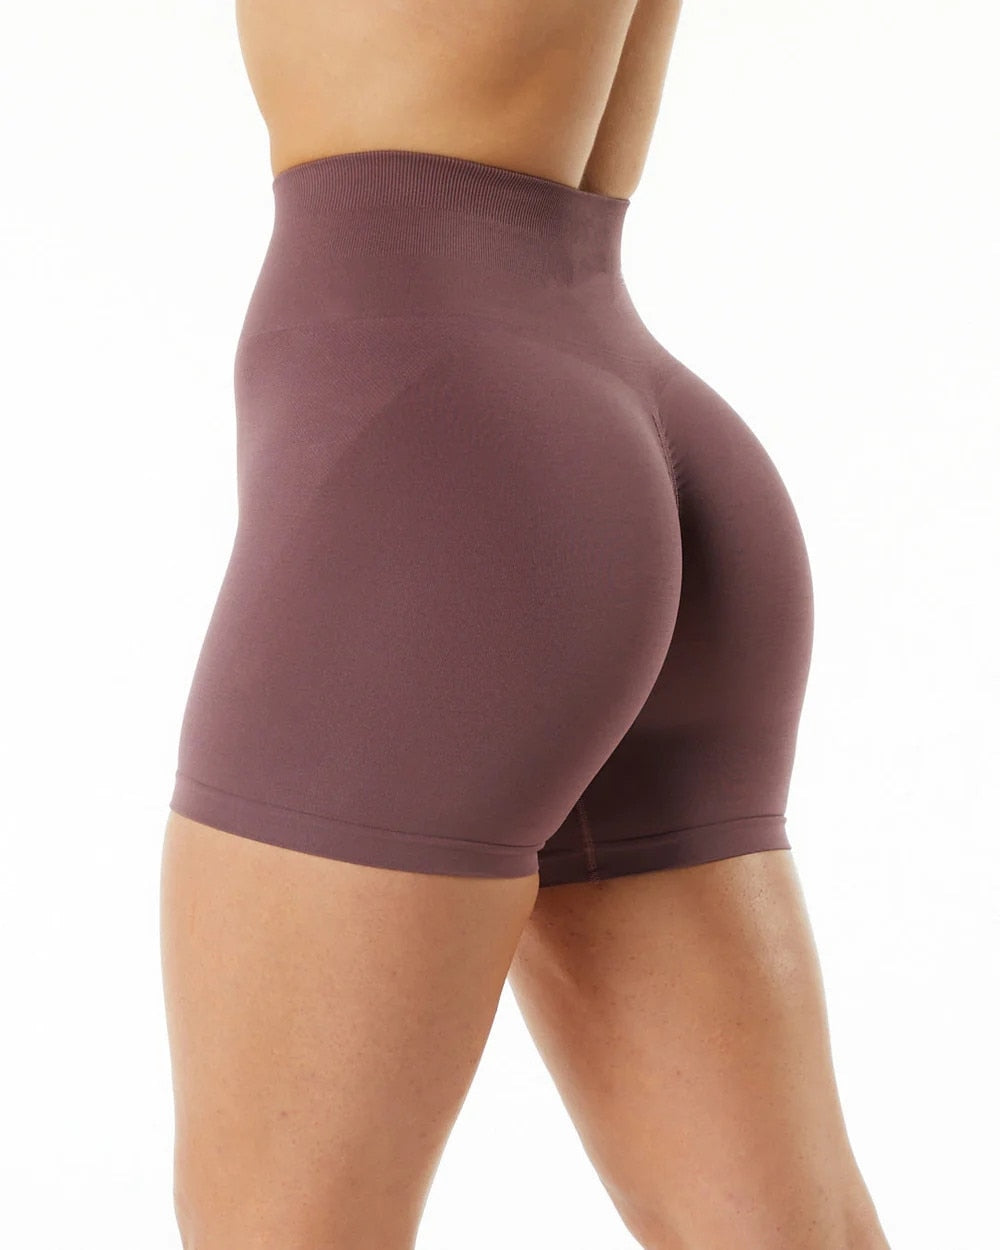 High Waist Amplify Seamless Scrunch Butt Gym Shorts